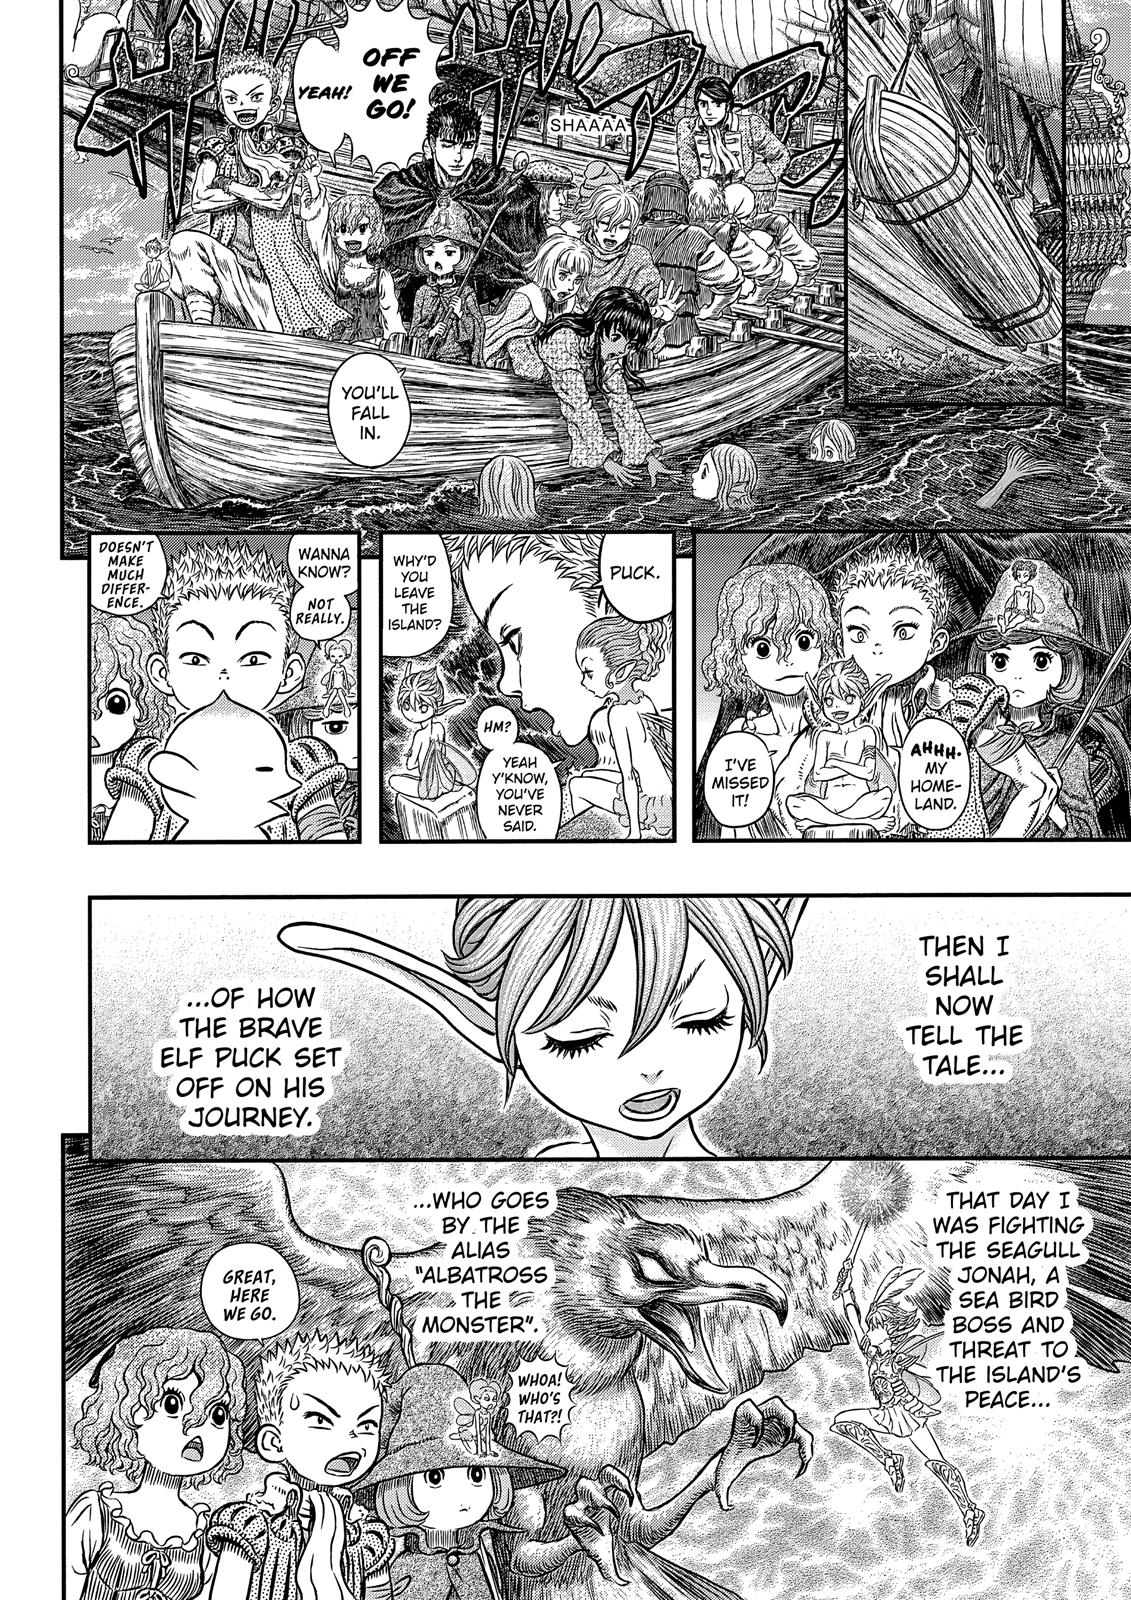 Berserk Manga Chapter 342 image 06